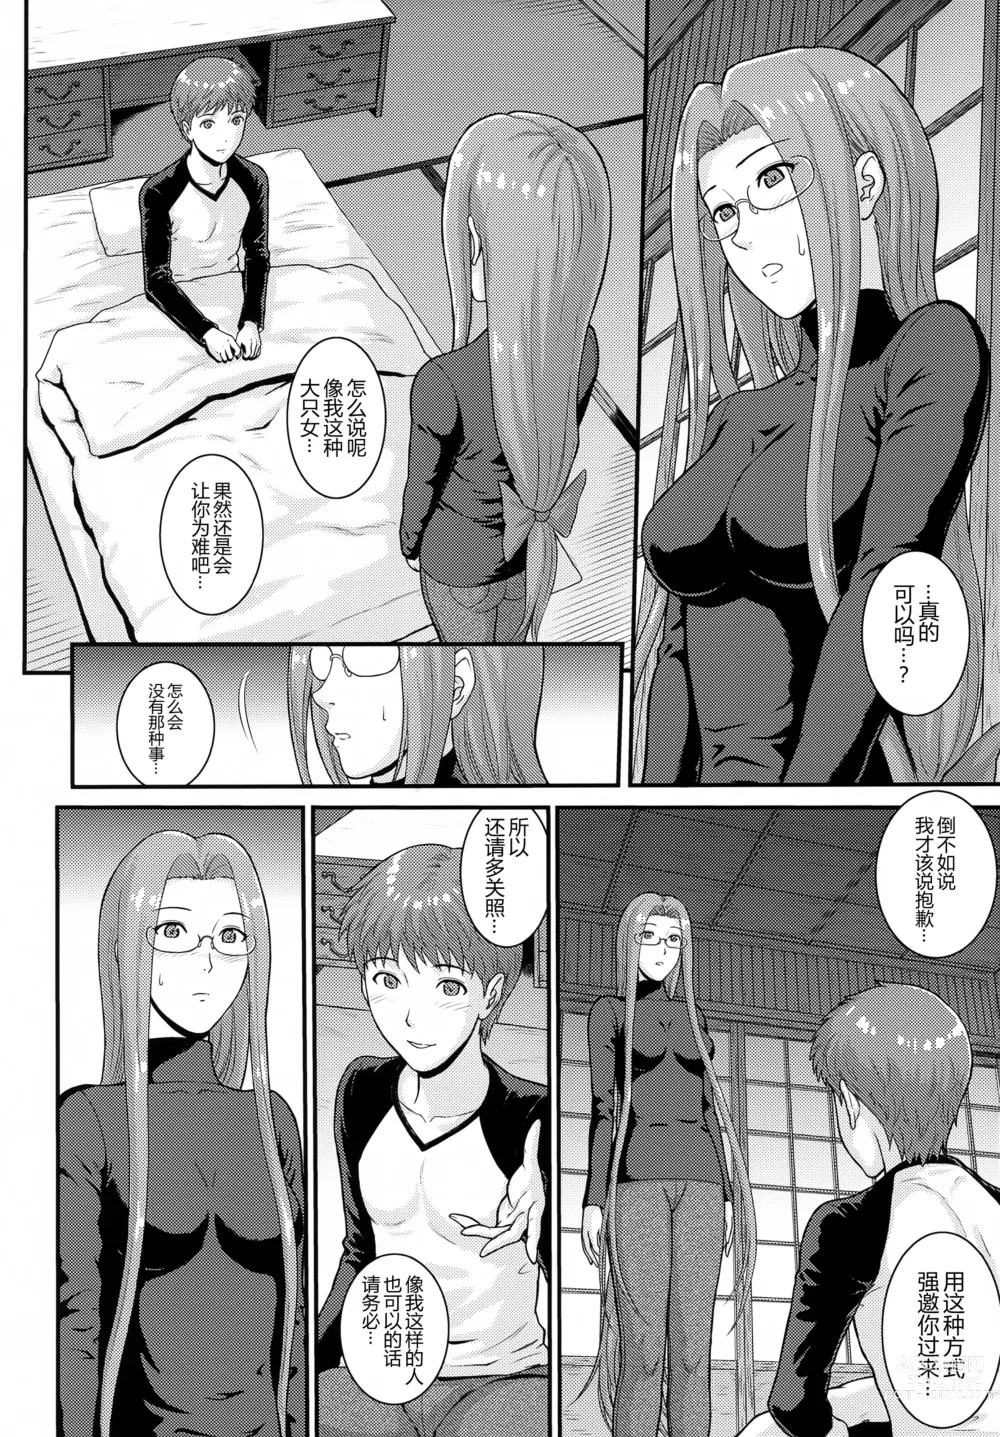 Page 6 of doujinshi Douka Kimi wa Shiawase ni